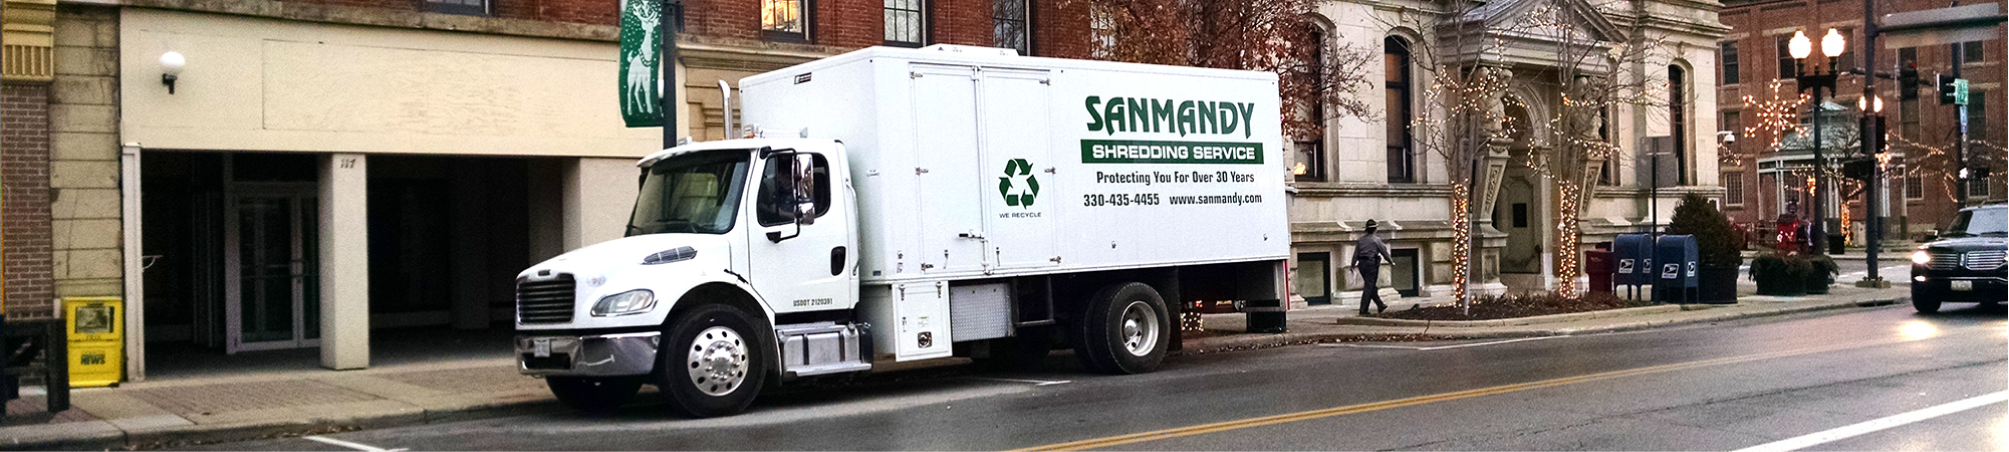 sanmandy-truck